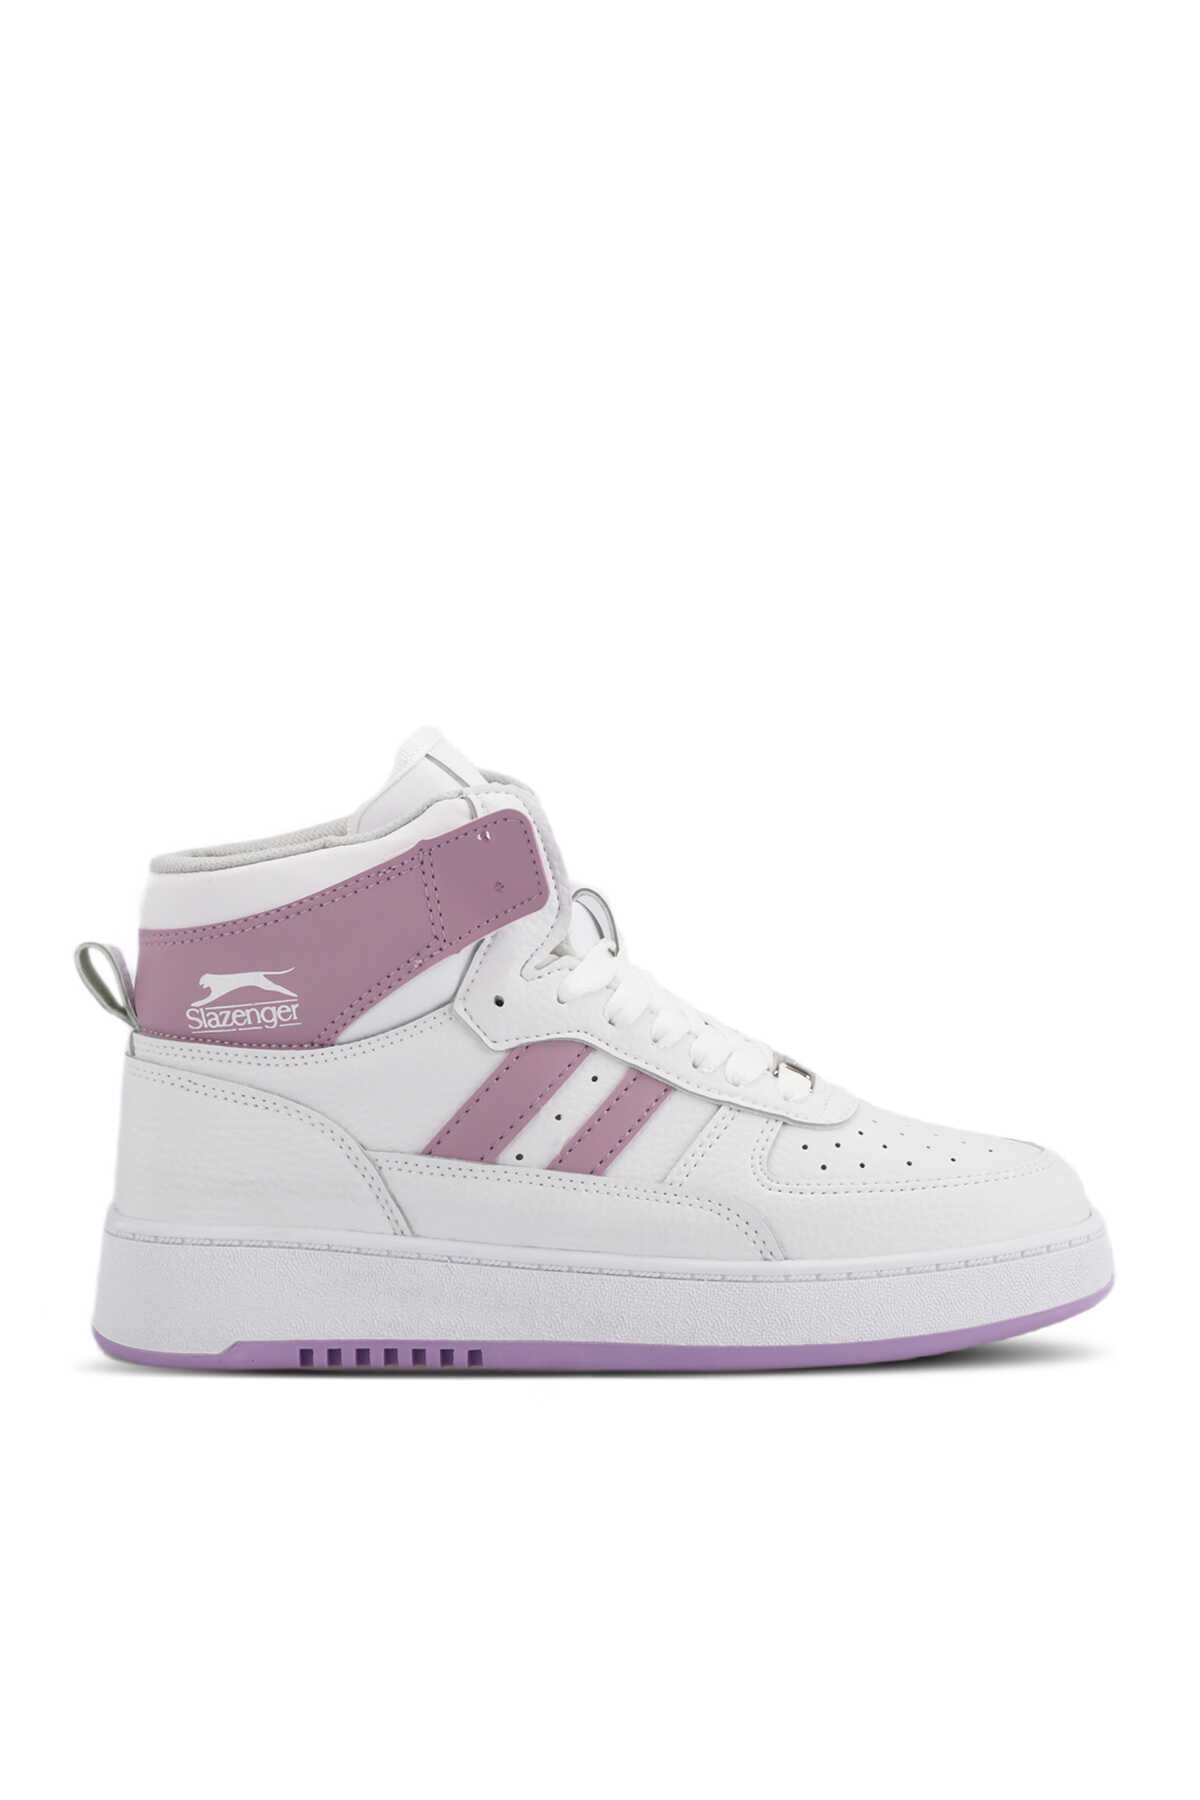 Slazenger - Slazenger DAPHNE HIGH Sneaker Kadın Ayakkabı Beyaz / Mor